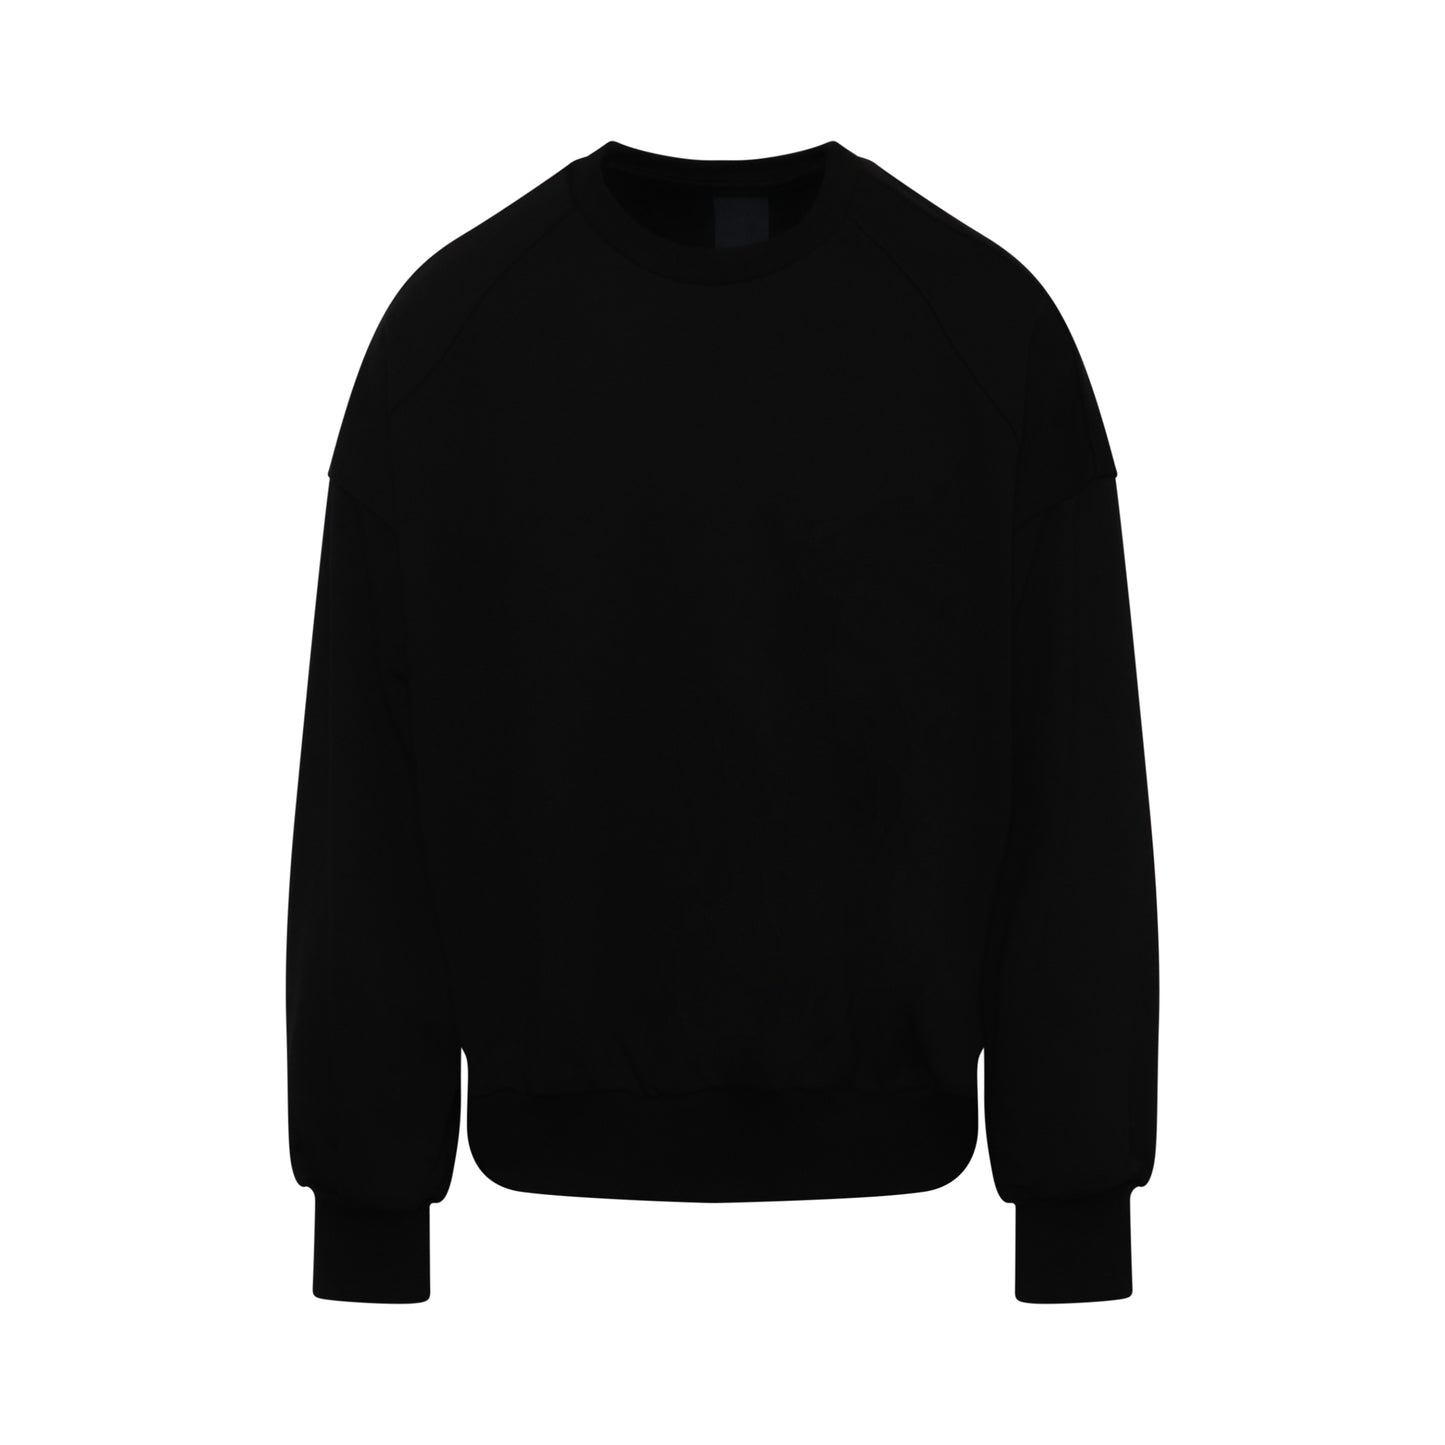 Juunj Oversize Graphic Sweatshirt in Black